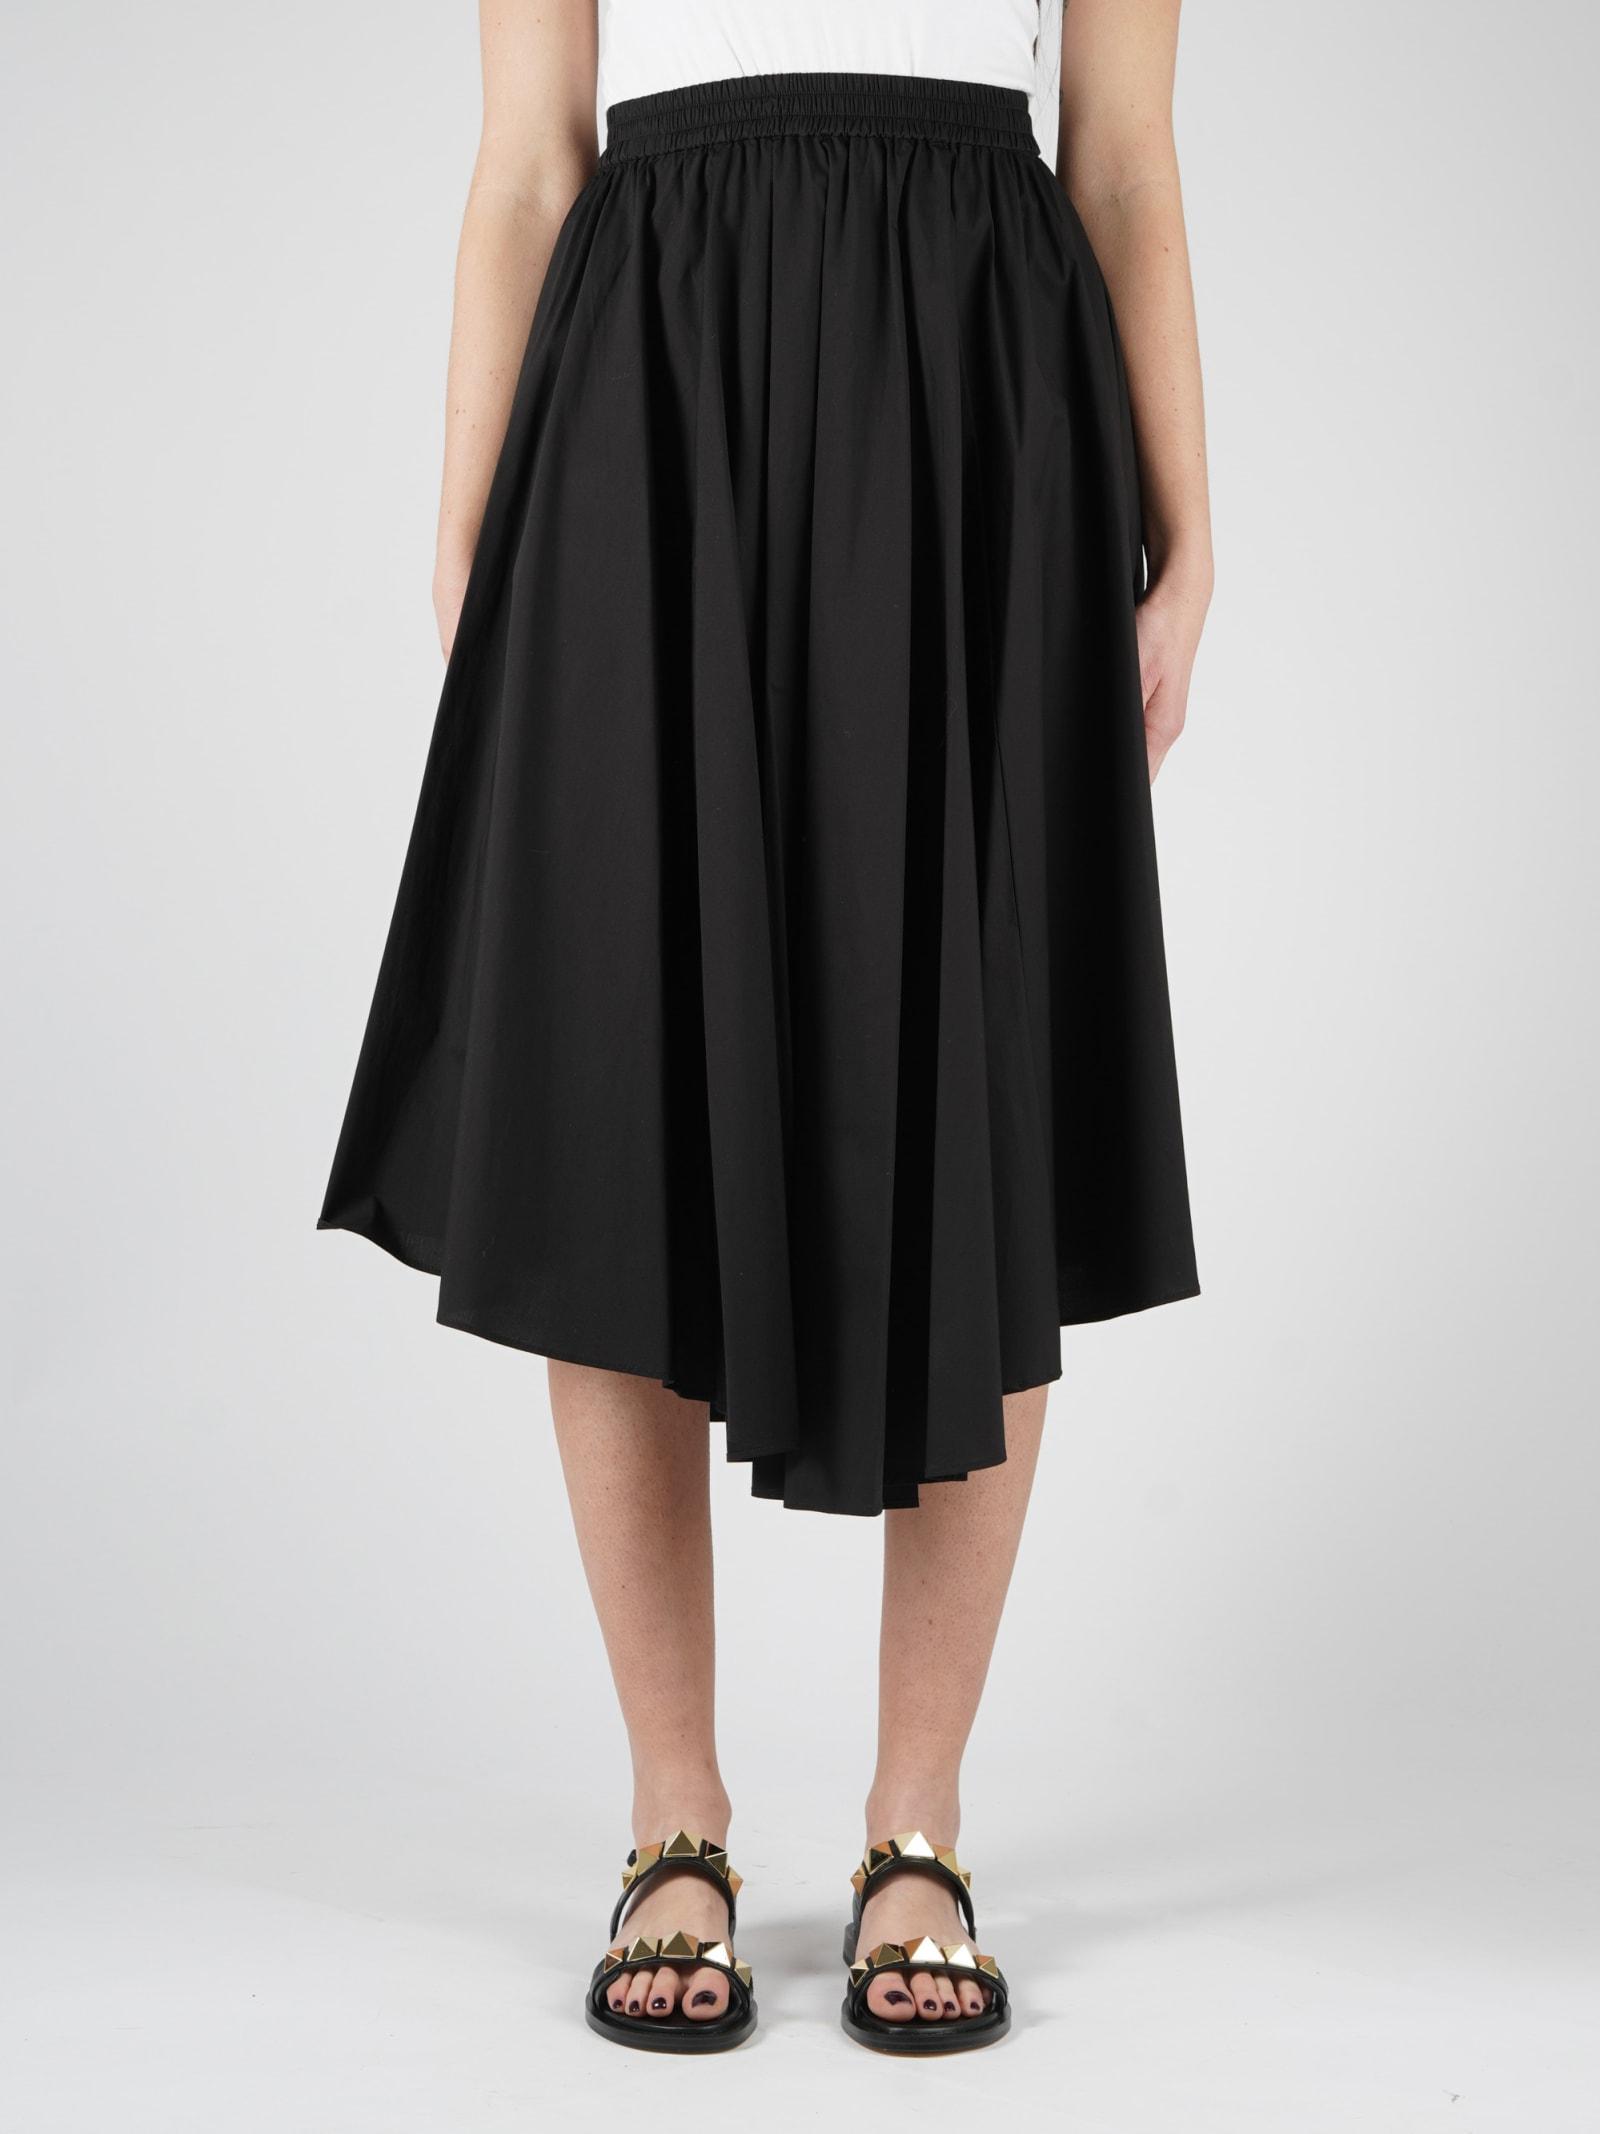 Michael Kors Cotton Poplin Pull On Skt Skirt in Black | Lyst